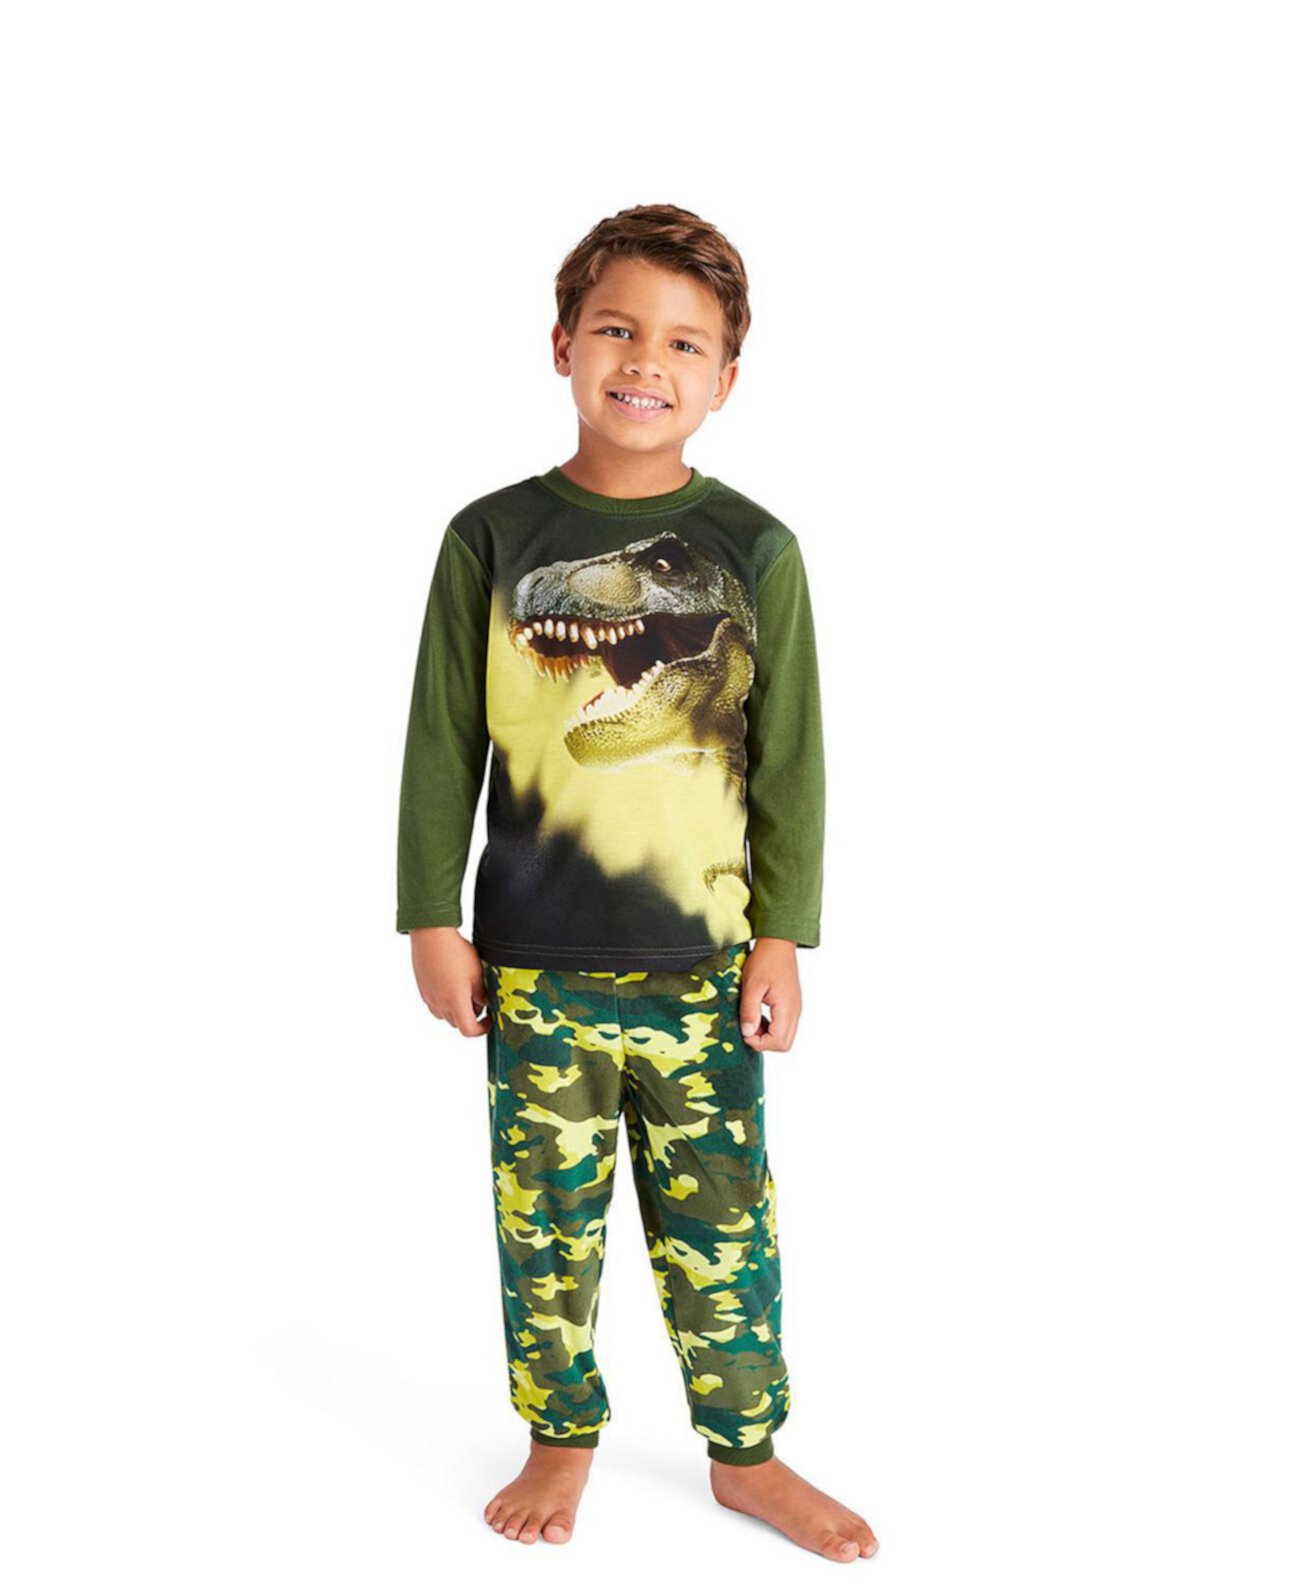 Пижамный комплект из 2 предметов для малышей | Детский пижамный комплект для мальчиков Детская одежда для сна, топ с длинными рукавами и длинные штаны с манжетами Пижамный комплект Jellifish Kids